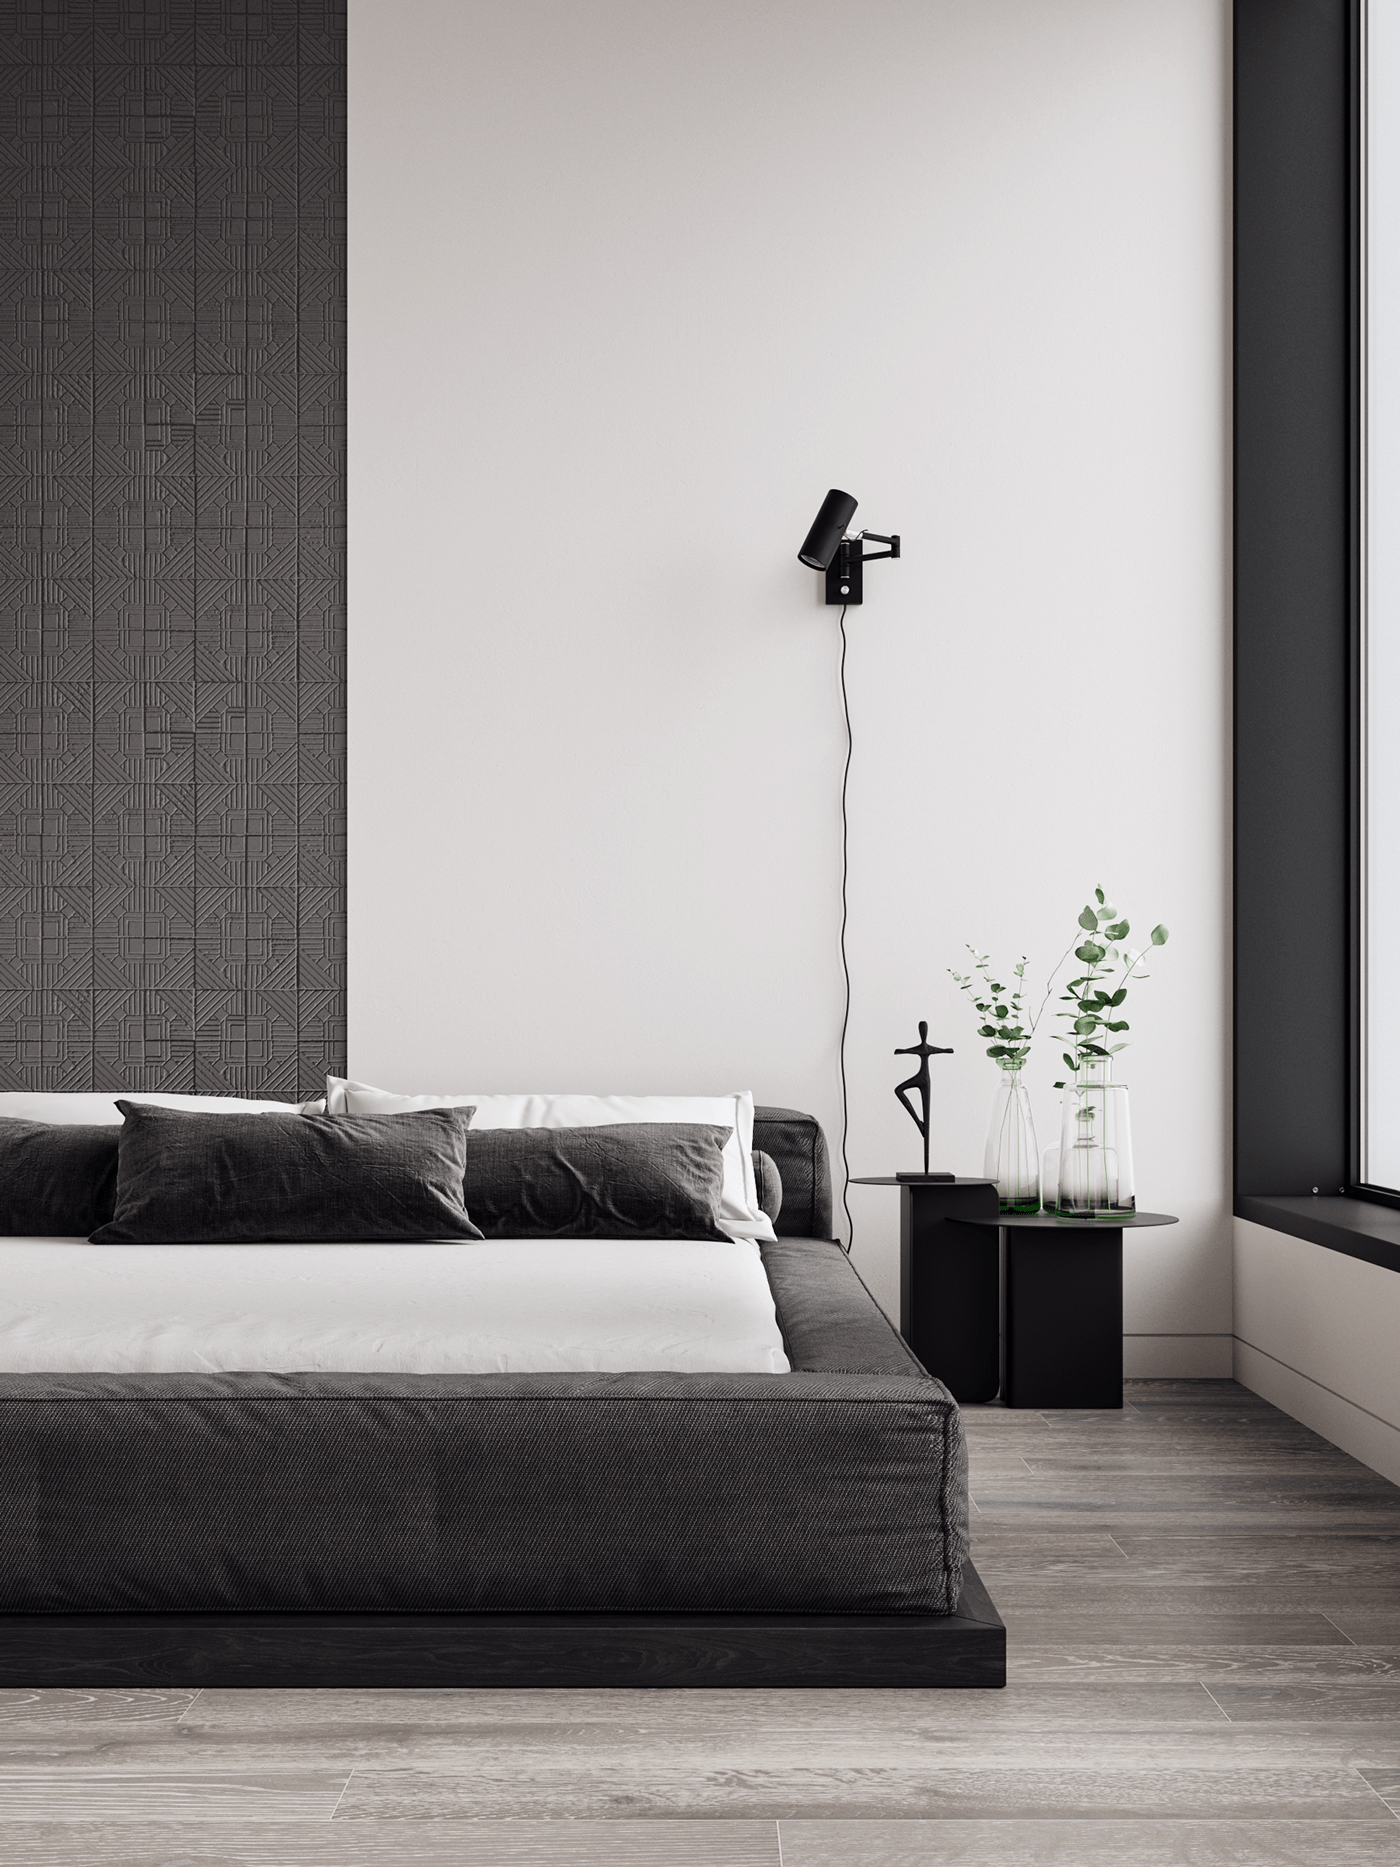 architecture archviz bedroom CGI interior design  kitchen kitchen design living room minimal minimalist